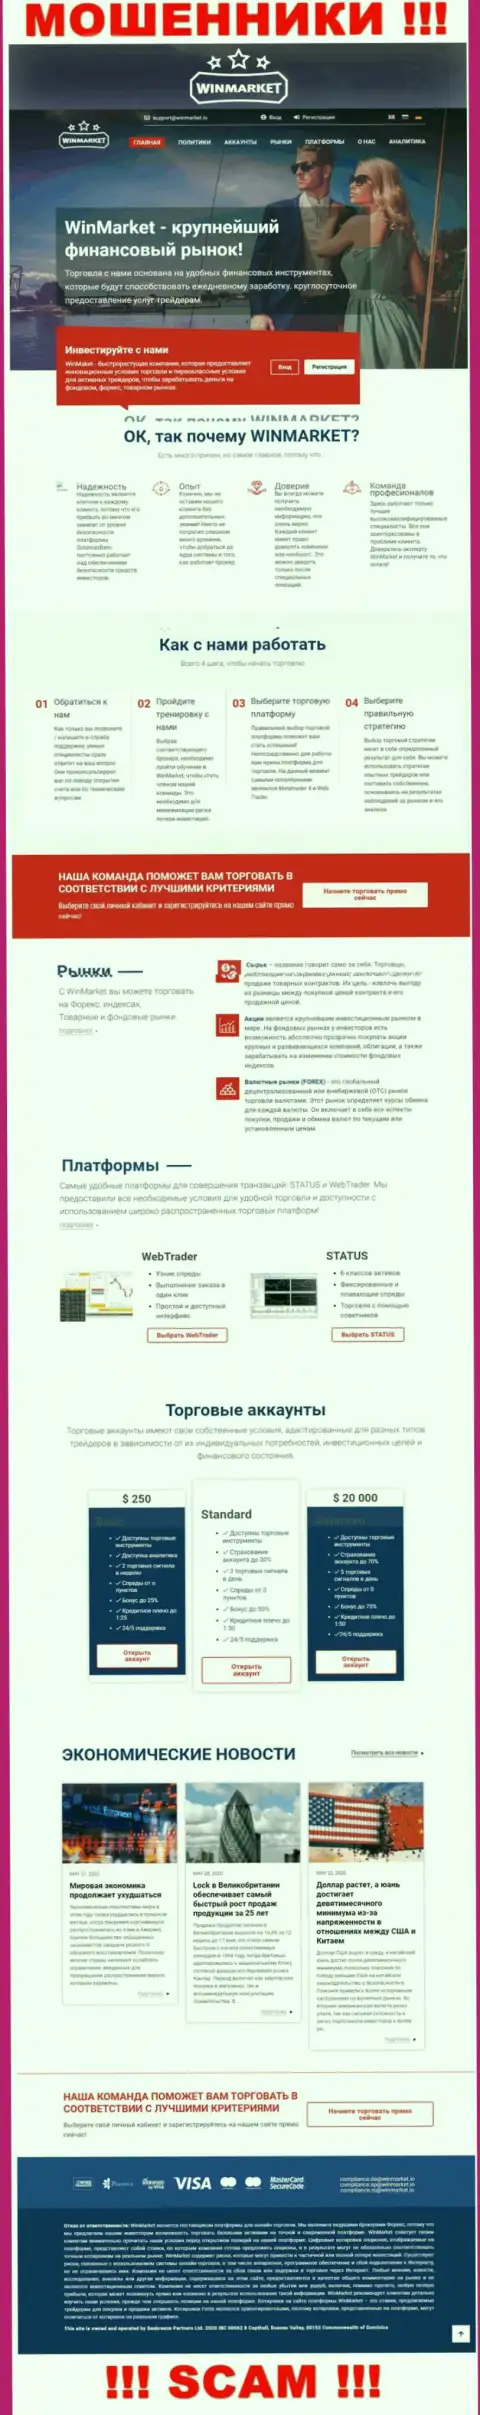 Лживая информация от компании ВинМаркет на официальном сайте мошенников